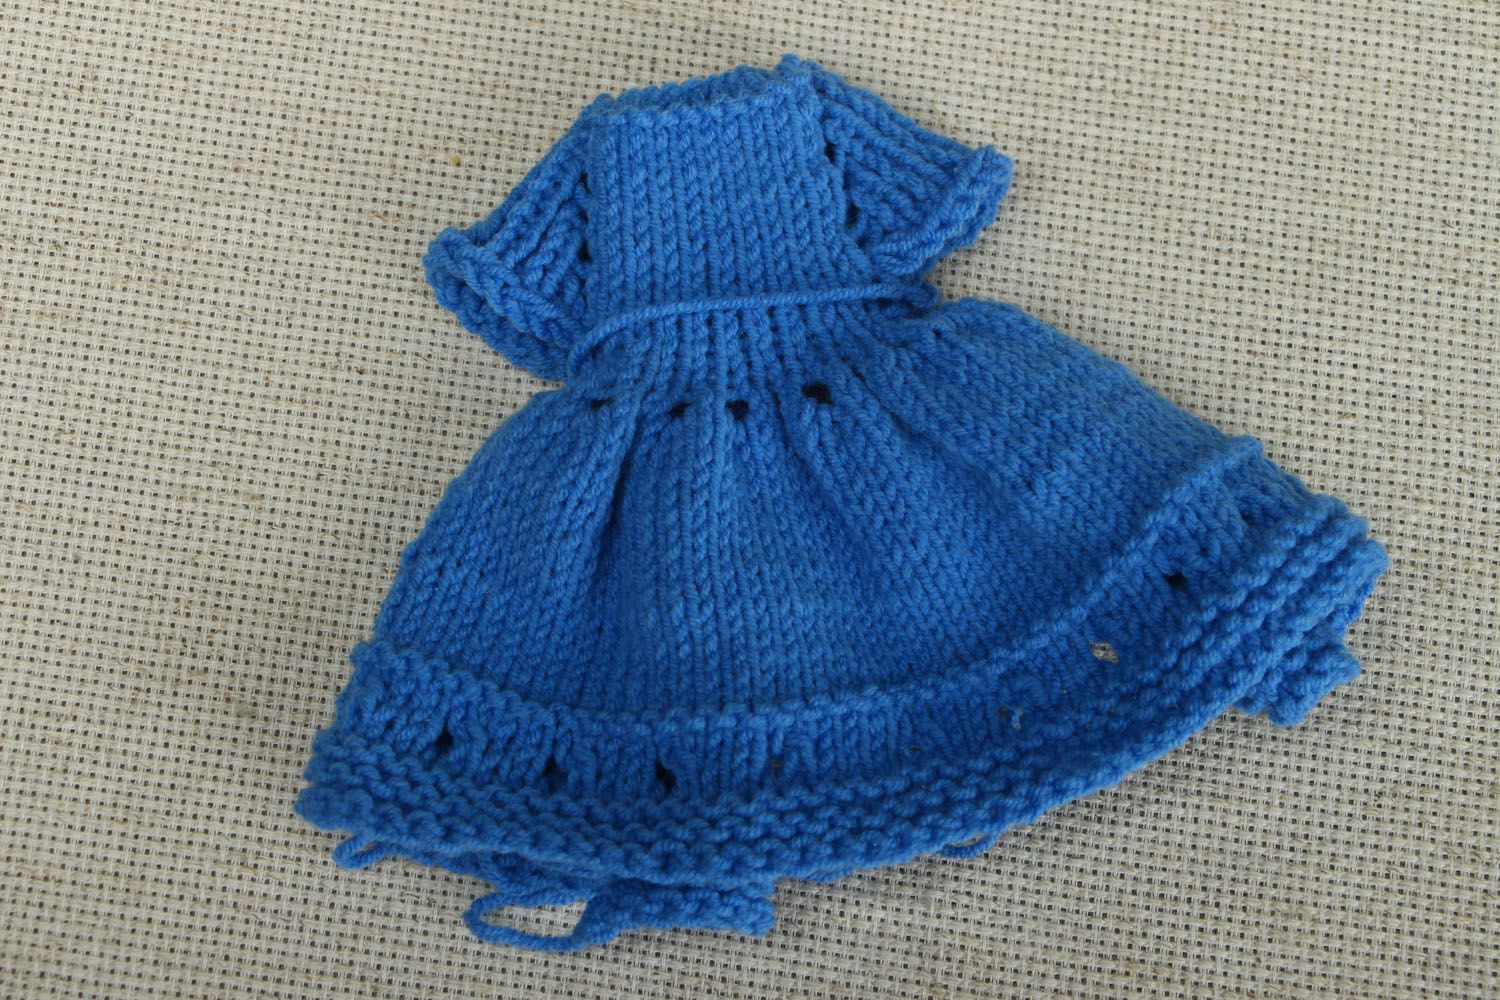 Crochet dress for doll photo 1